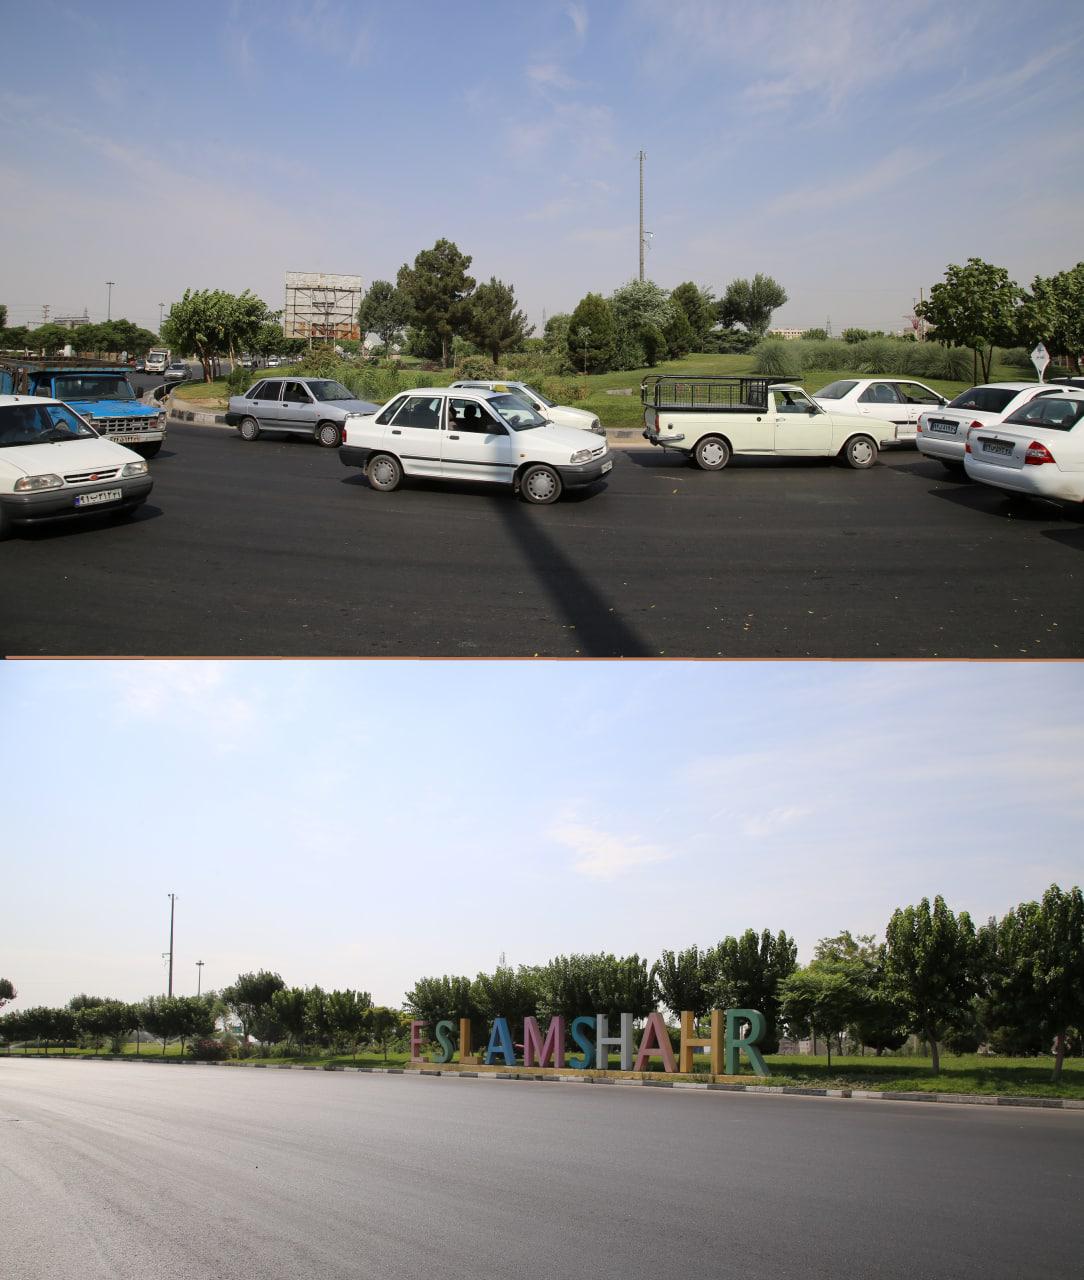 رفع معضل ترافیک میدان الغدیر با اجرای طرح اصلاح هندسی میدان